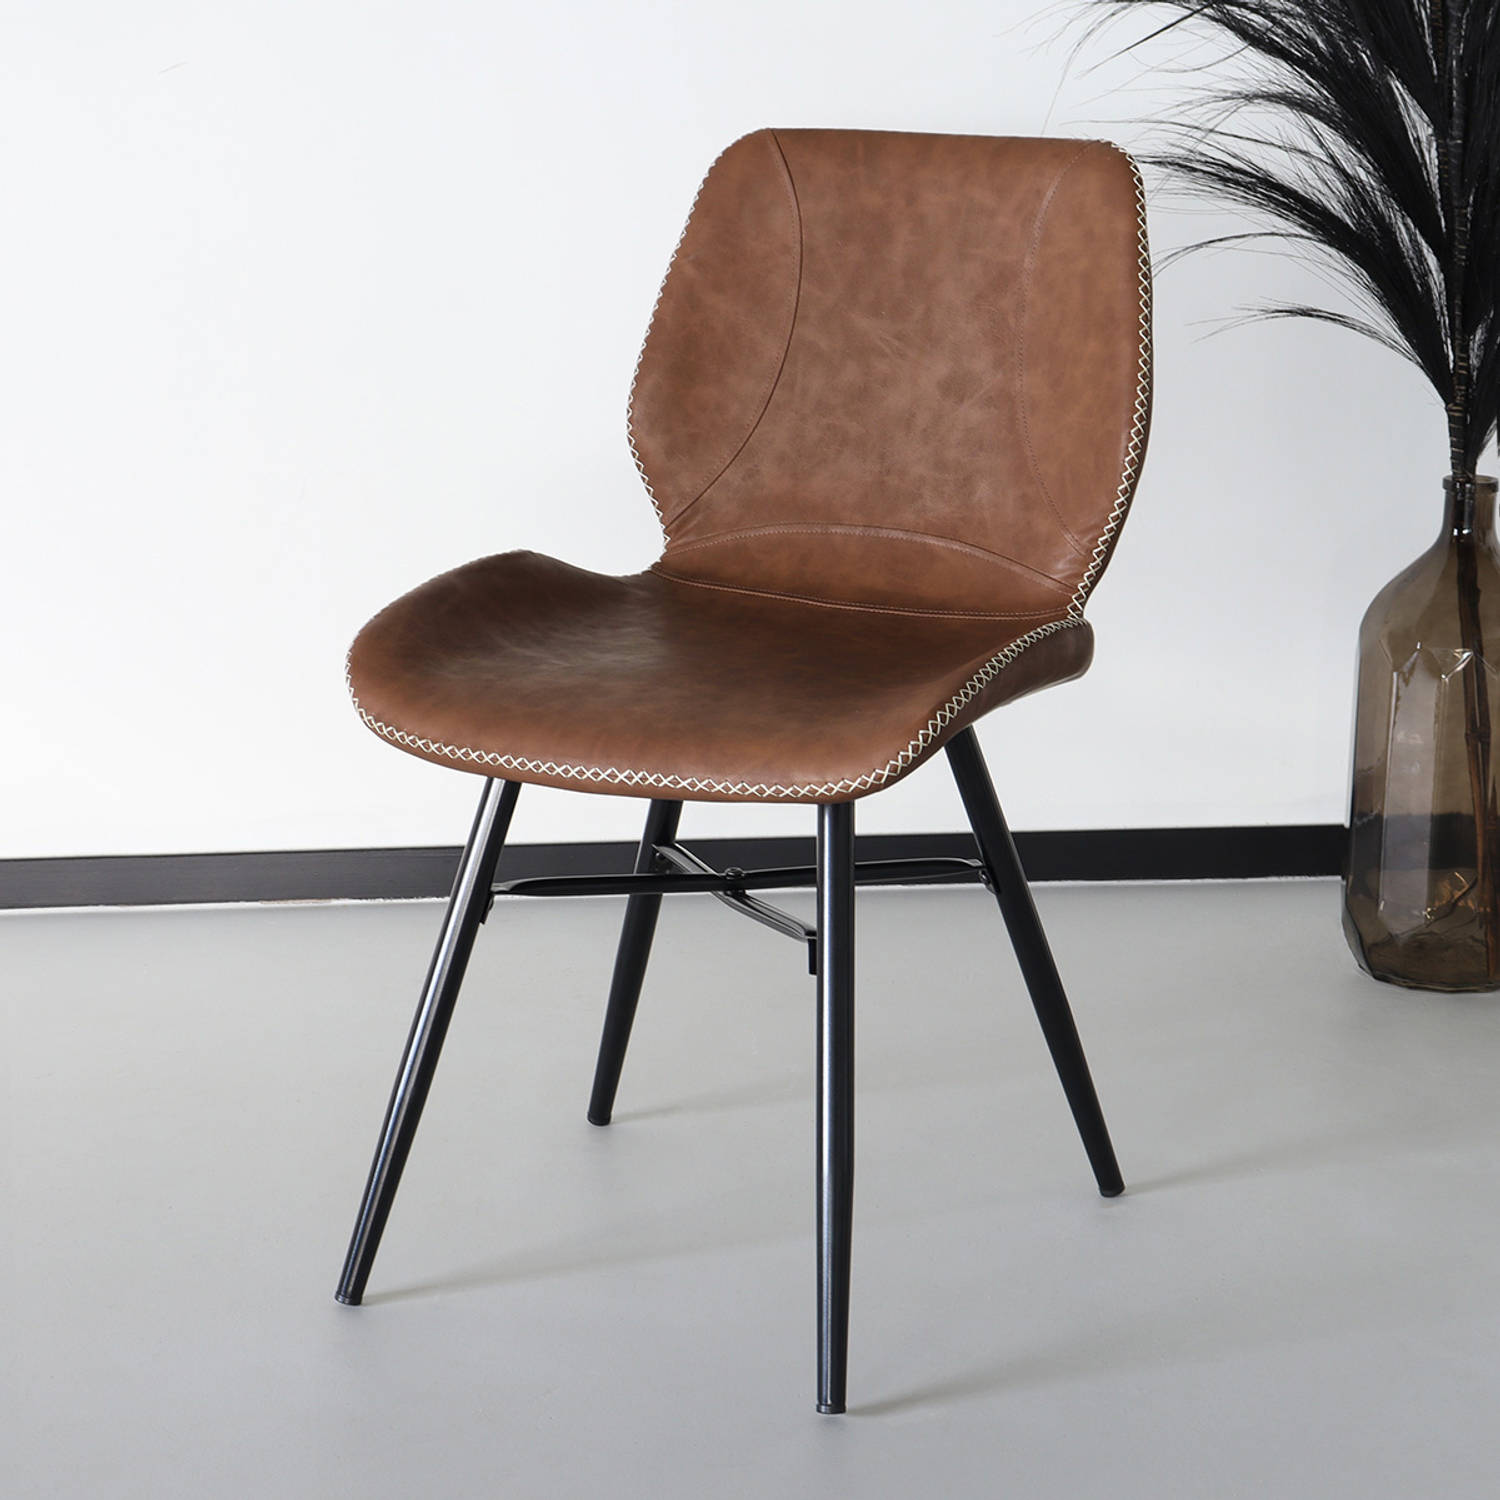 Eetkamerstoel Christa cognac design stoel